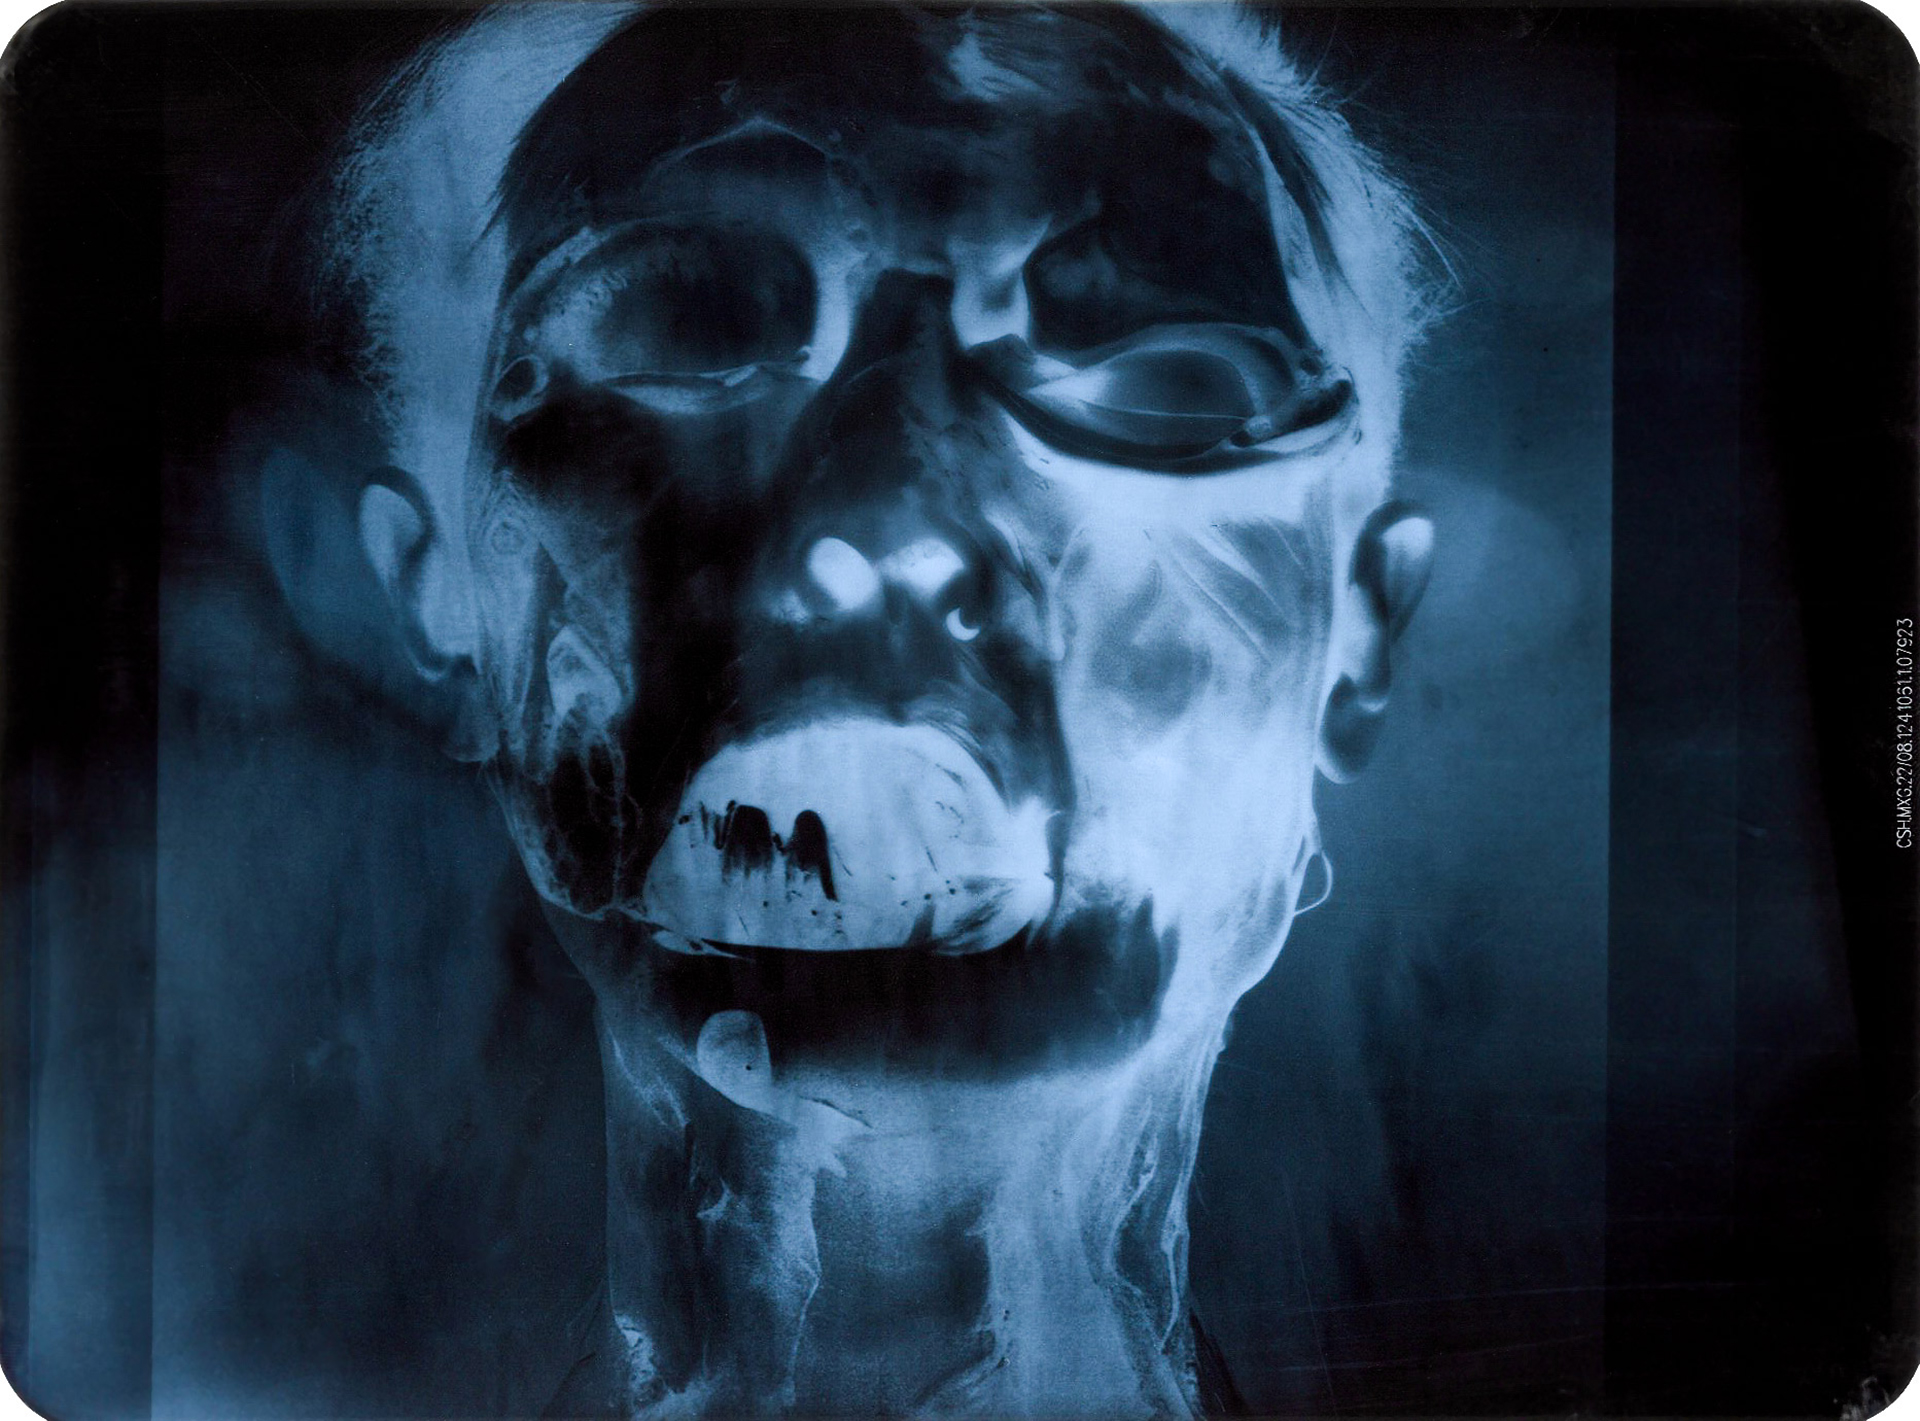 Cykl obrazów w konwencji medycznych fotografii rentgenowych, przedstawiających humanoidalne motywy o patologicznie zniekształconych głowach, czaszkach, zębach, kościach, itp.